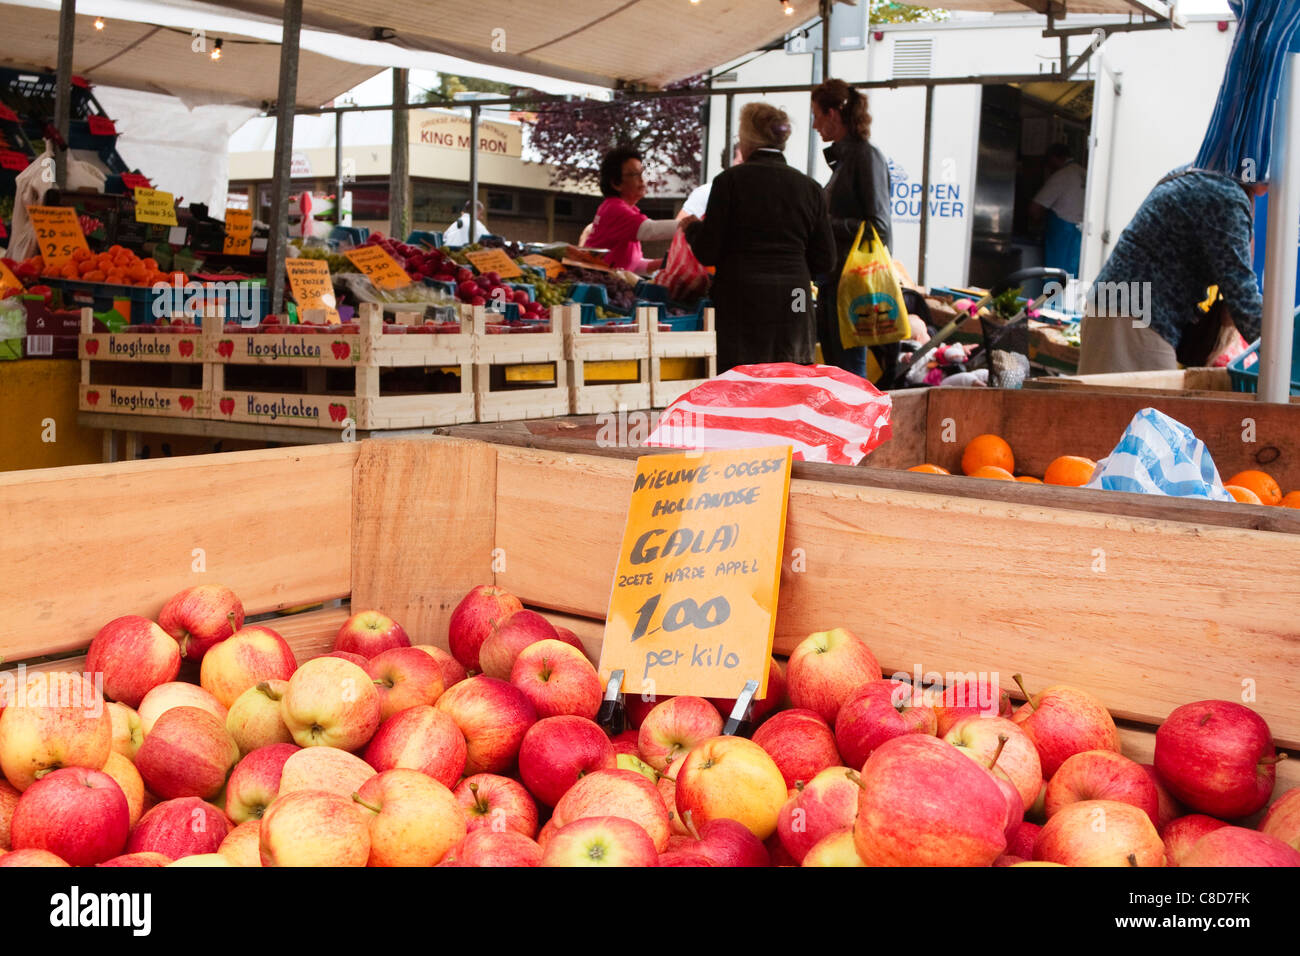 Gala Äpfel zum Verkauf an einen Obst und Gemüse Stand auf einem Markt in Sliedrecht, Niederlande, 2011 Stockfoto